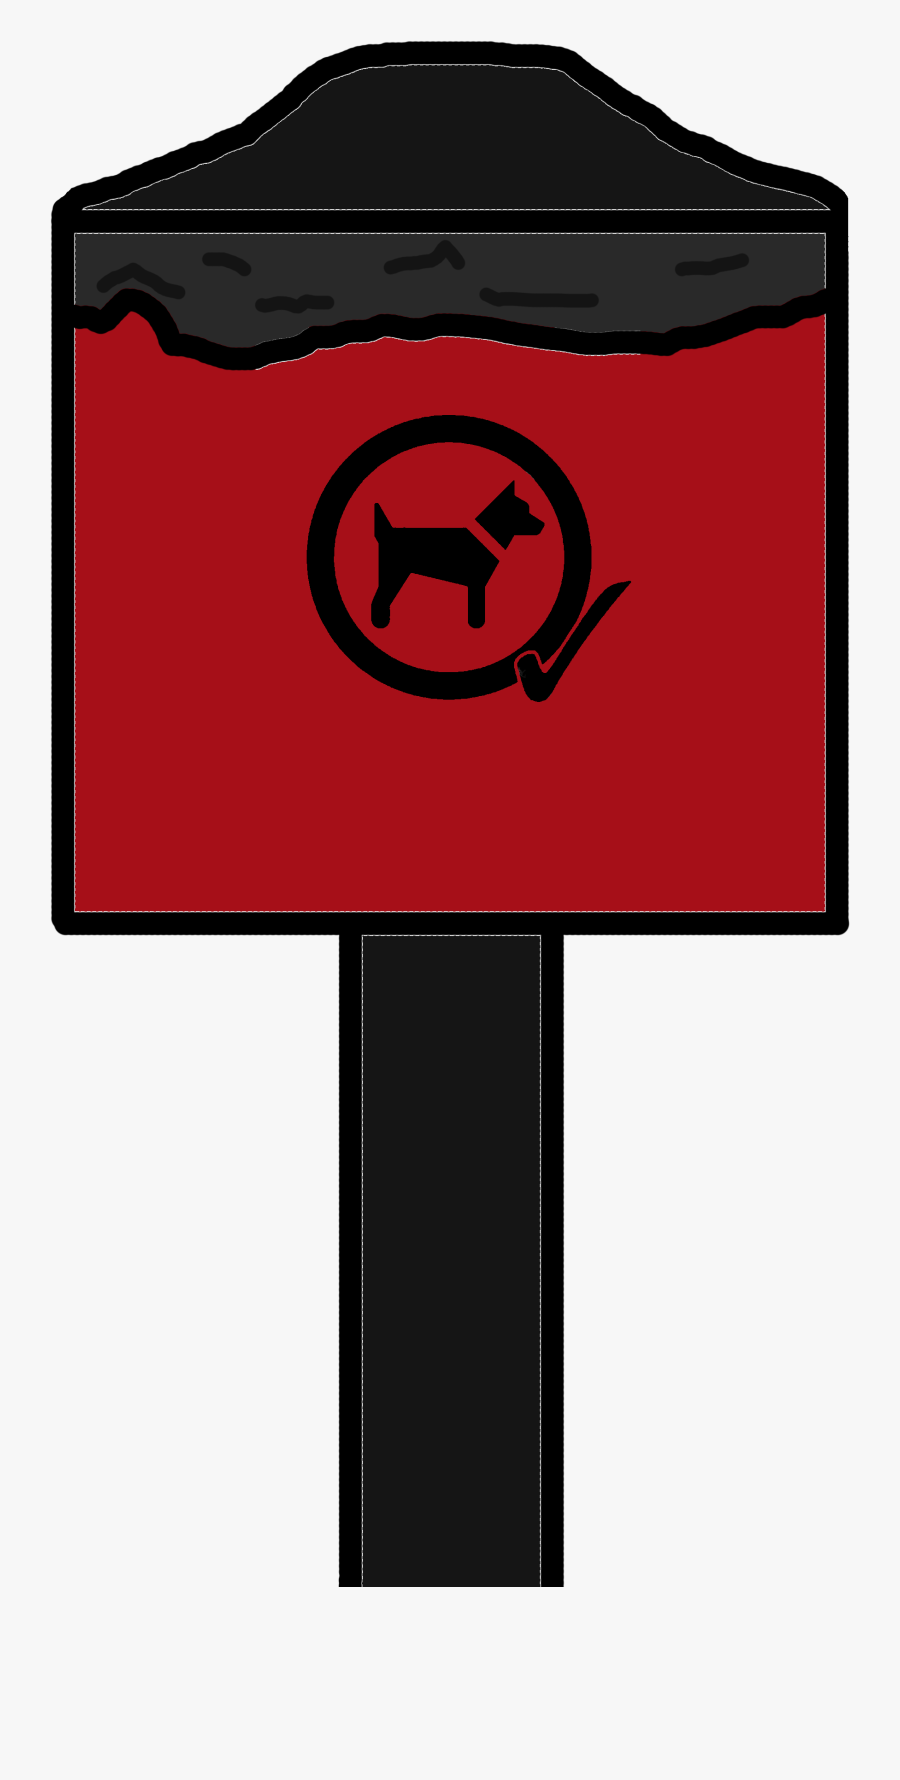 Dog Waste Bin - Dog Poo Bin Clip Art, Transparent Clipart